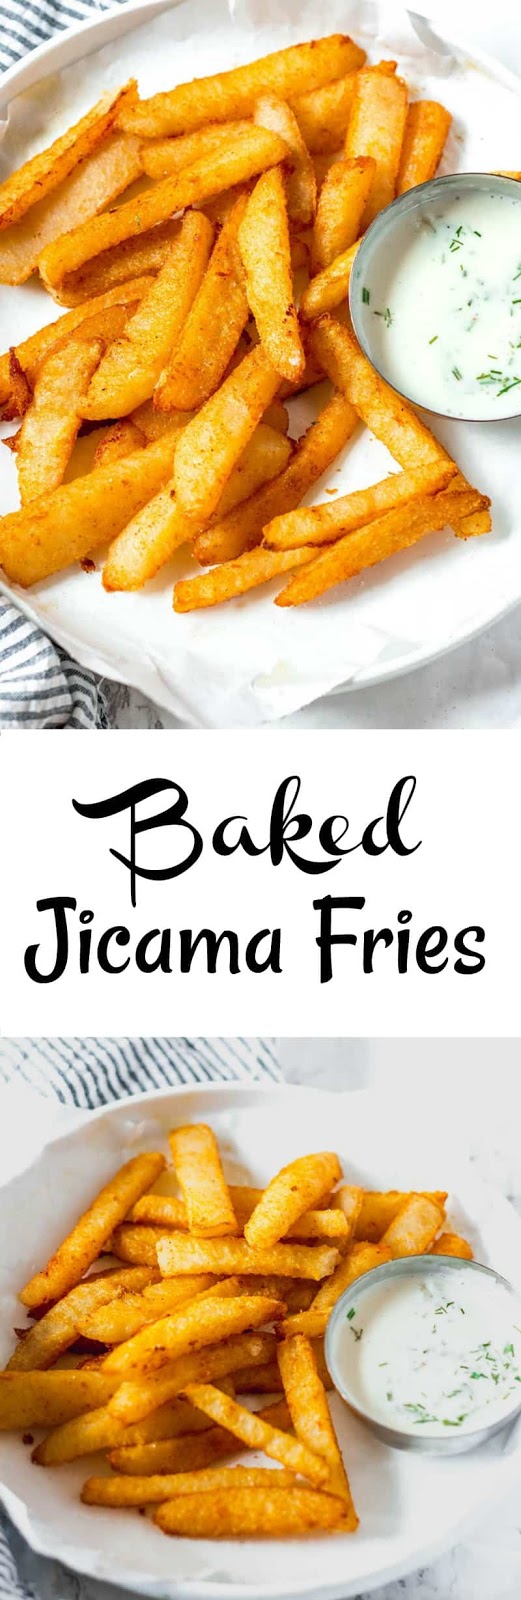 Baked Jicama Fries